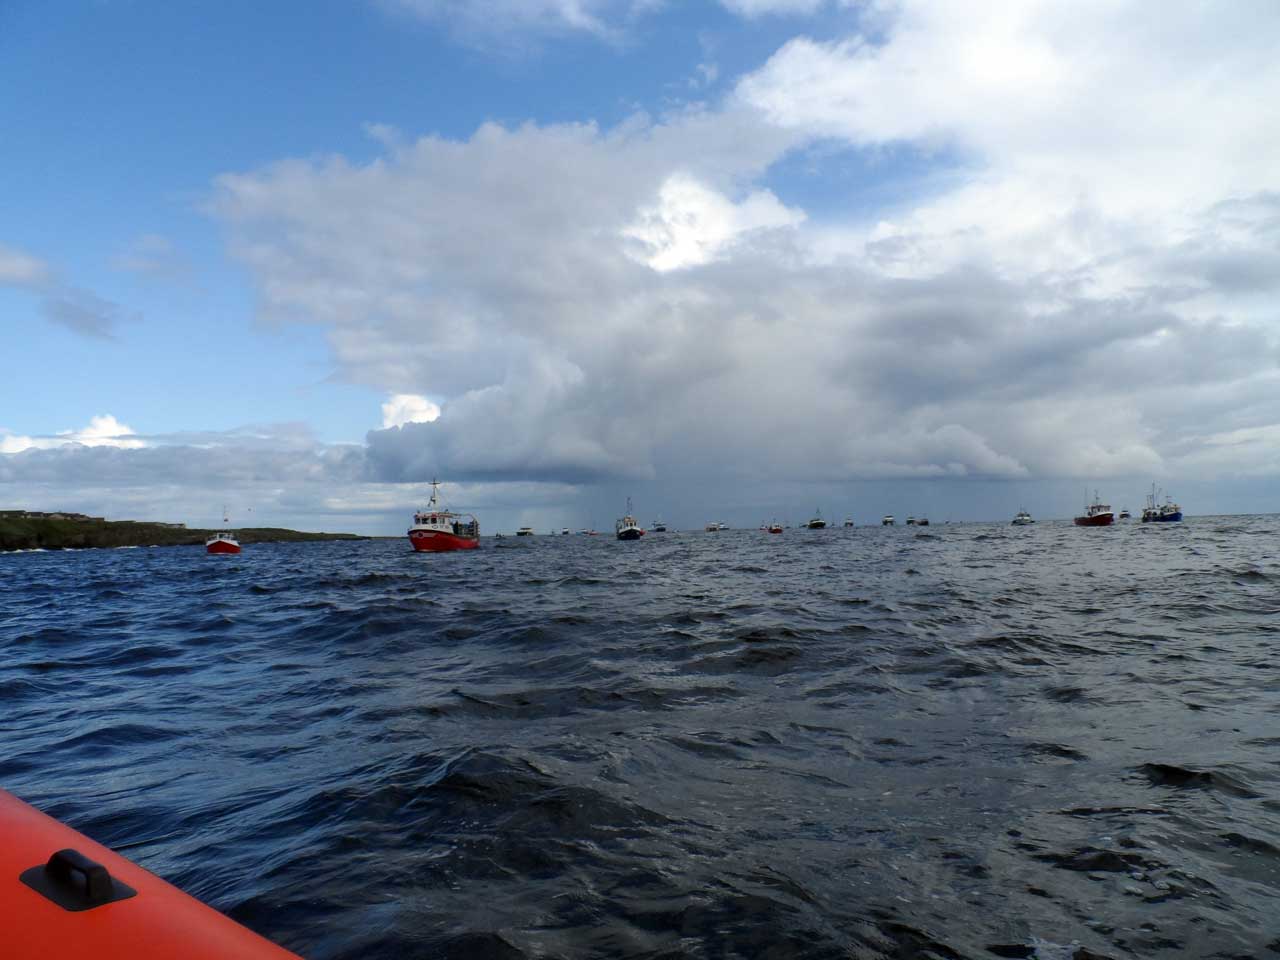 Photo: Black Saturday Anniversary Flotilla of Boats At Wick Bay